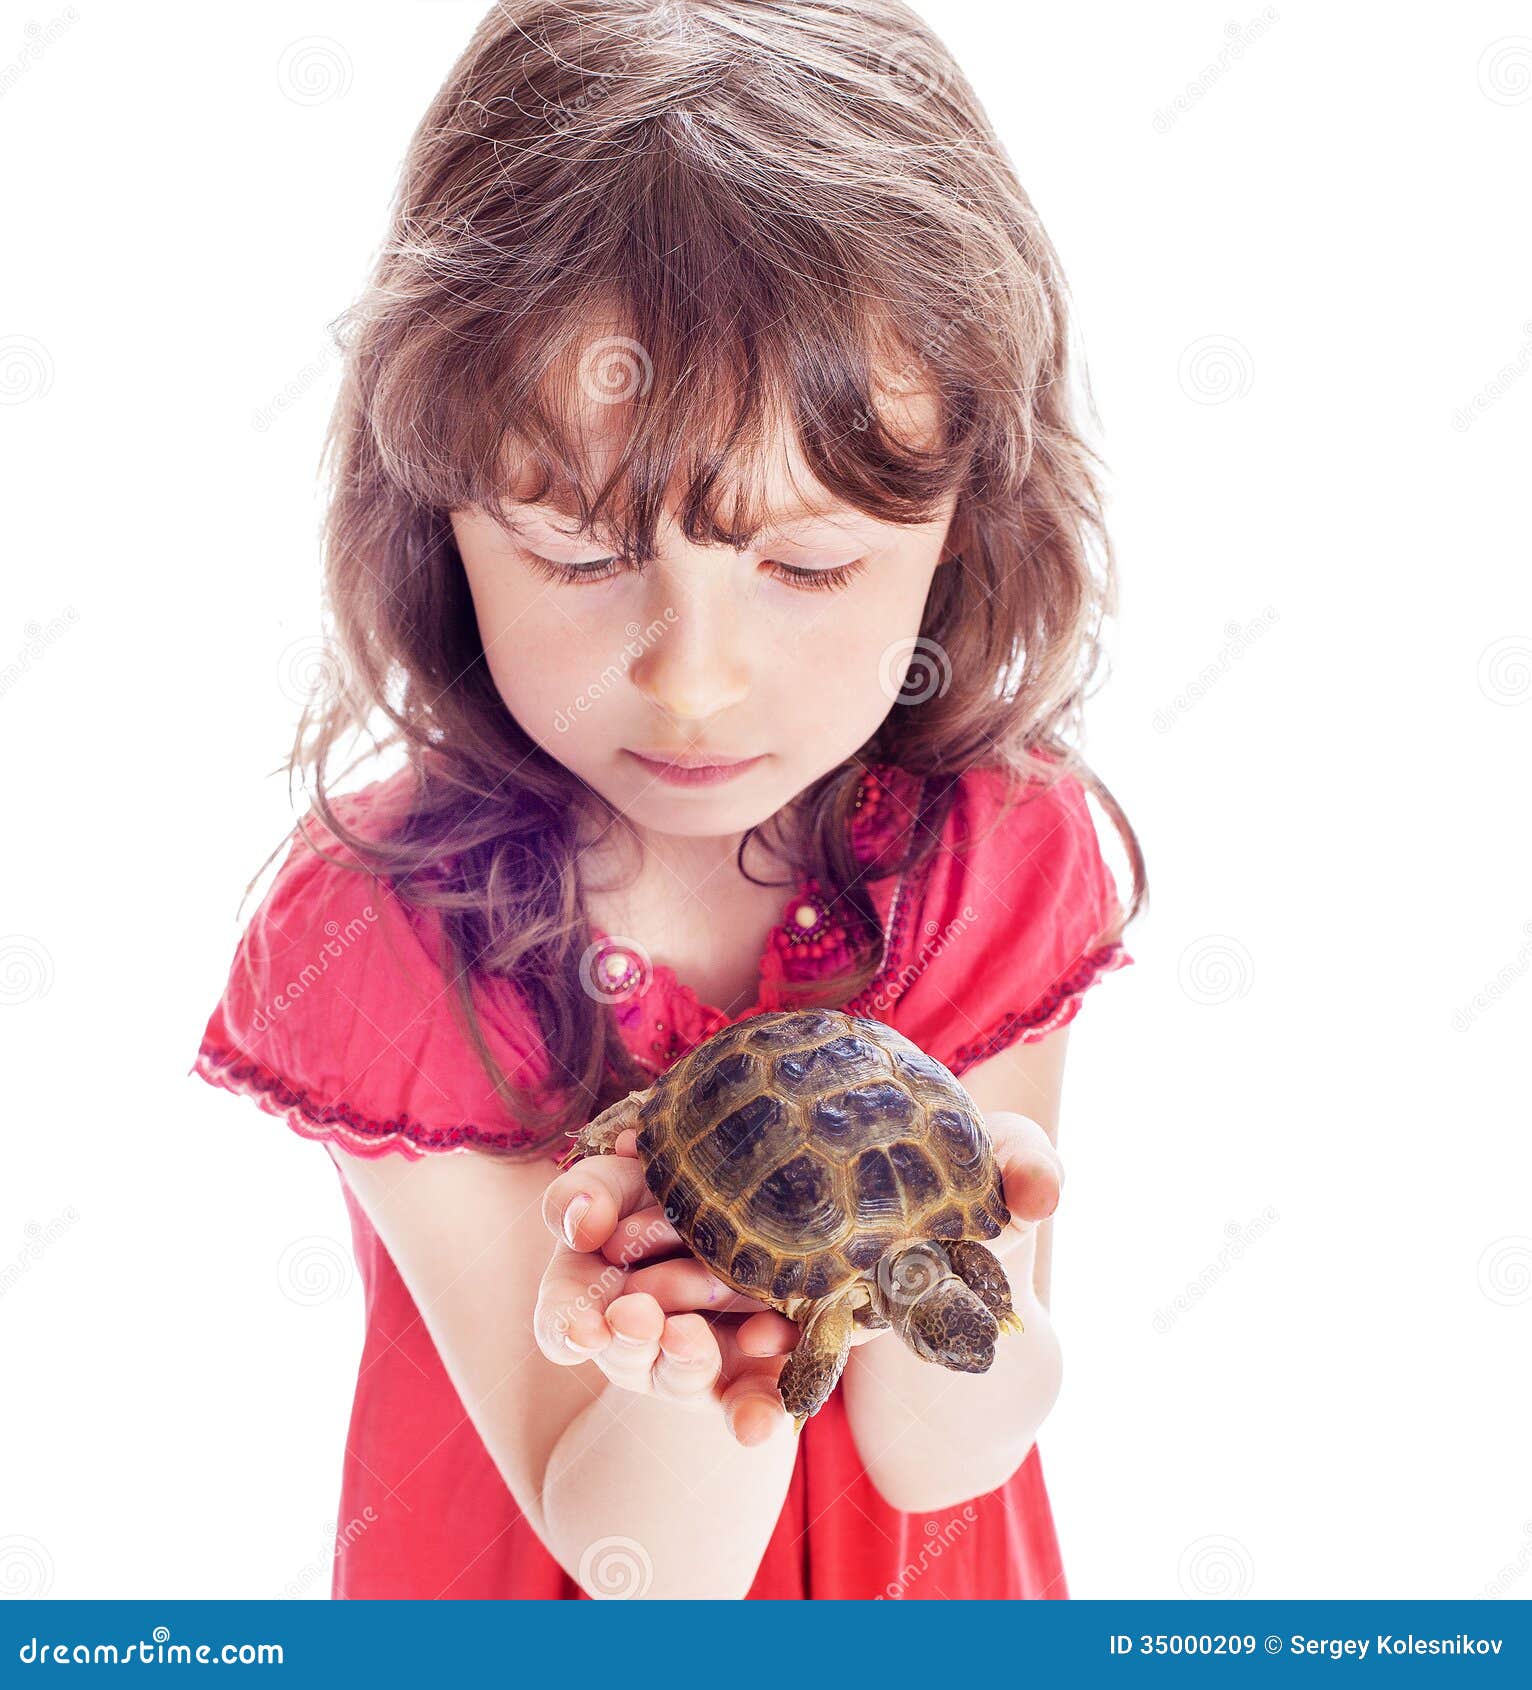 Алиса черепахи. Девочка черепашка. Черепашка девушка. Фотосессия с черепахой. Черепашка мальчик и девочка.